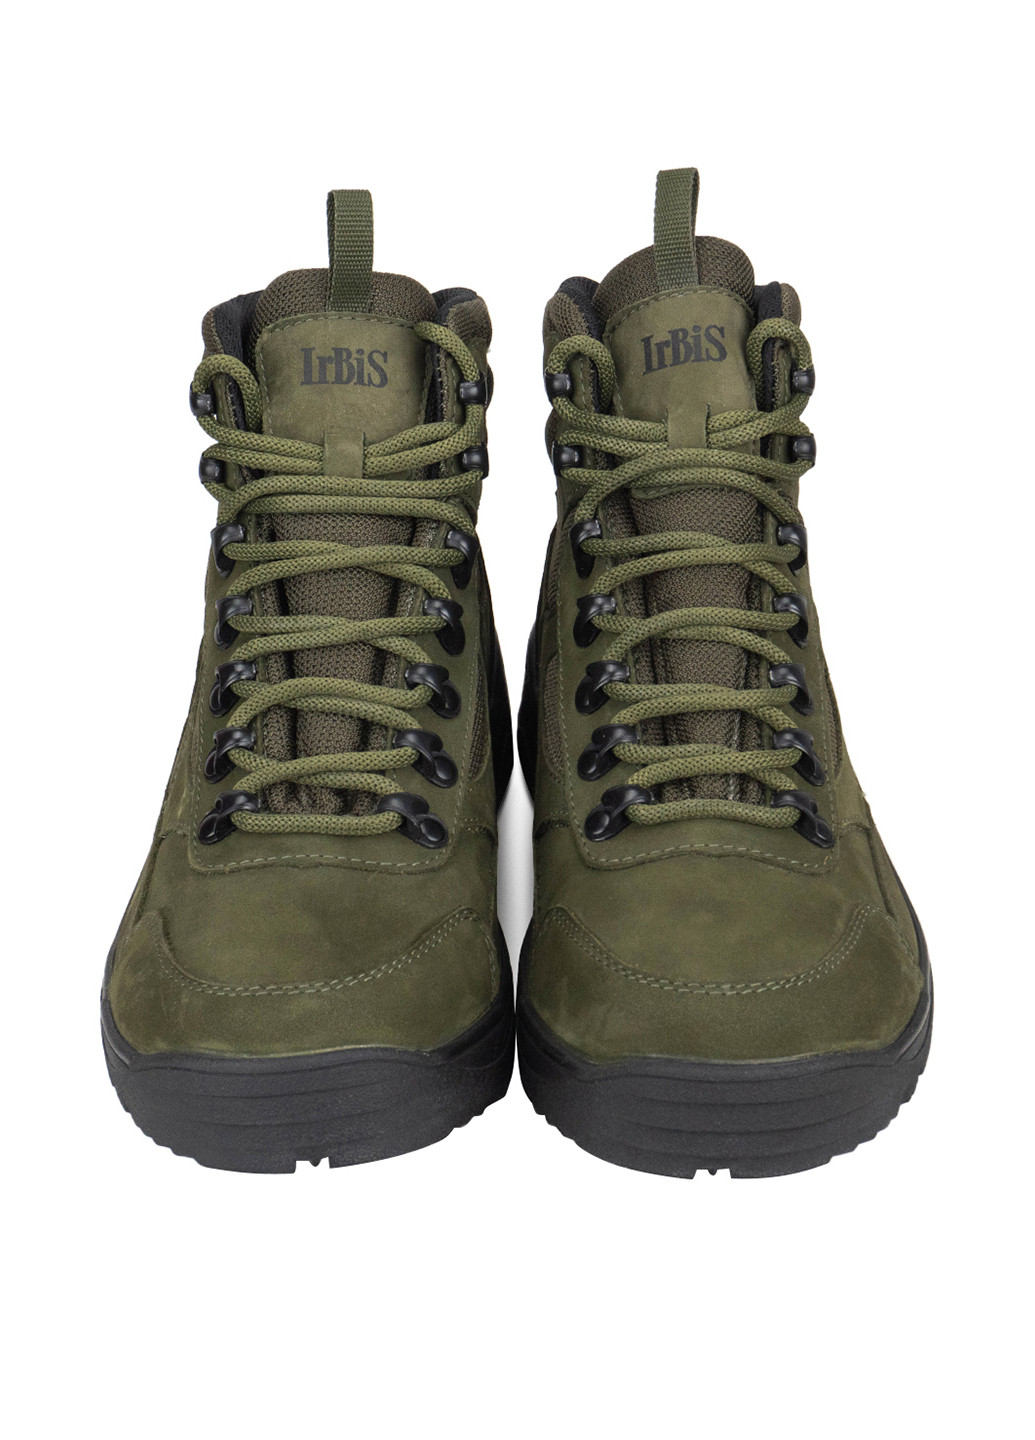 Темно-зеленые осенние ботинки Irbis